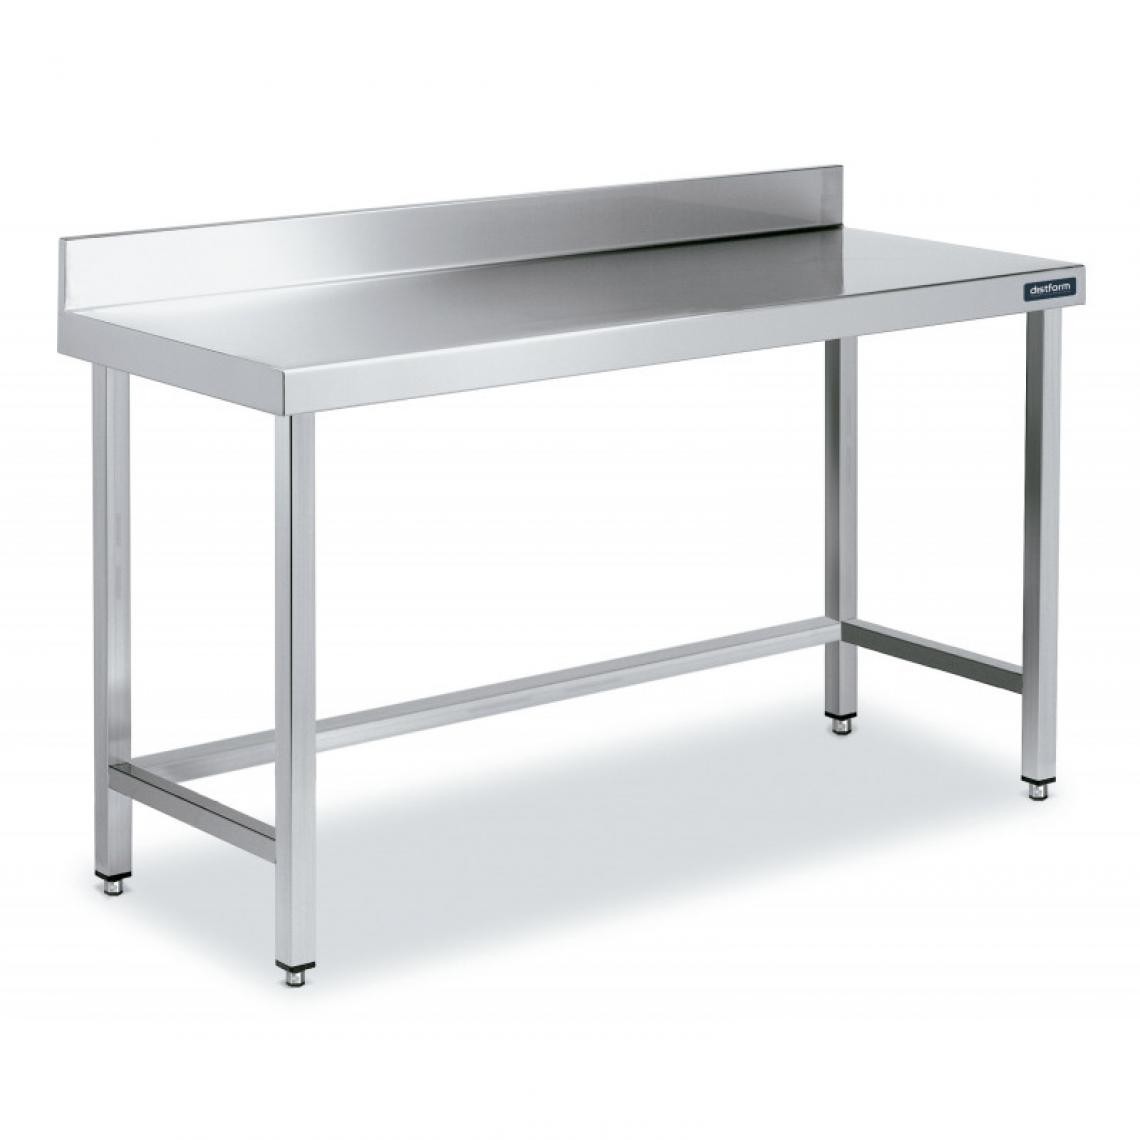 DISTFORM - Table Inox de Travail avec Dosseret Gamme 800 - Distform - Acier inoxydable1700x800 - Tables à manger